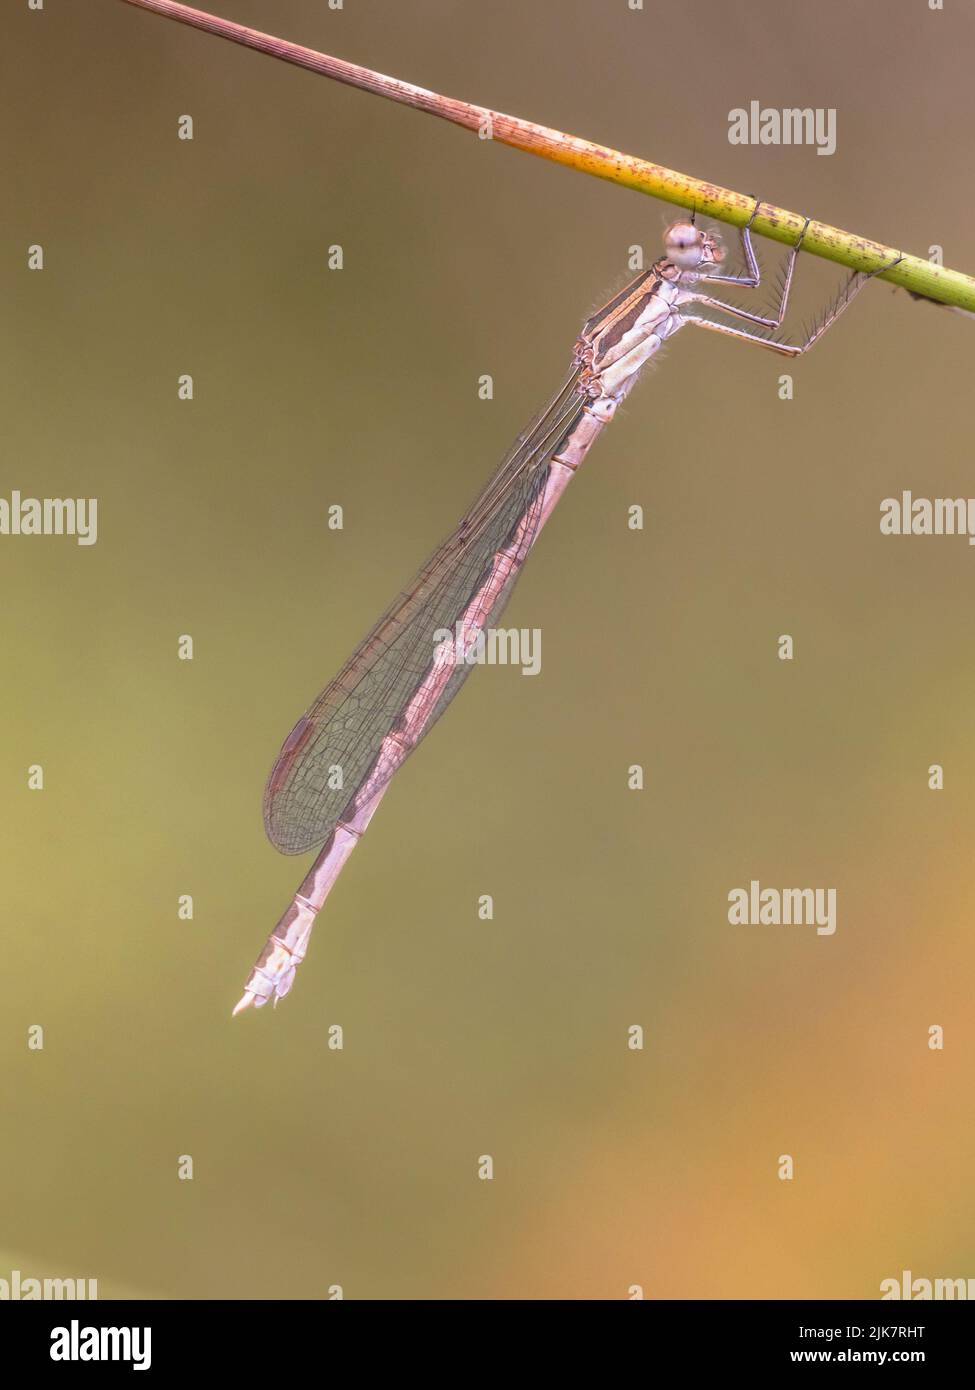 Común invierno damselfly (Symbecma fusca) encaramado sobre twig contra fondo verde brillante Foto de stock